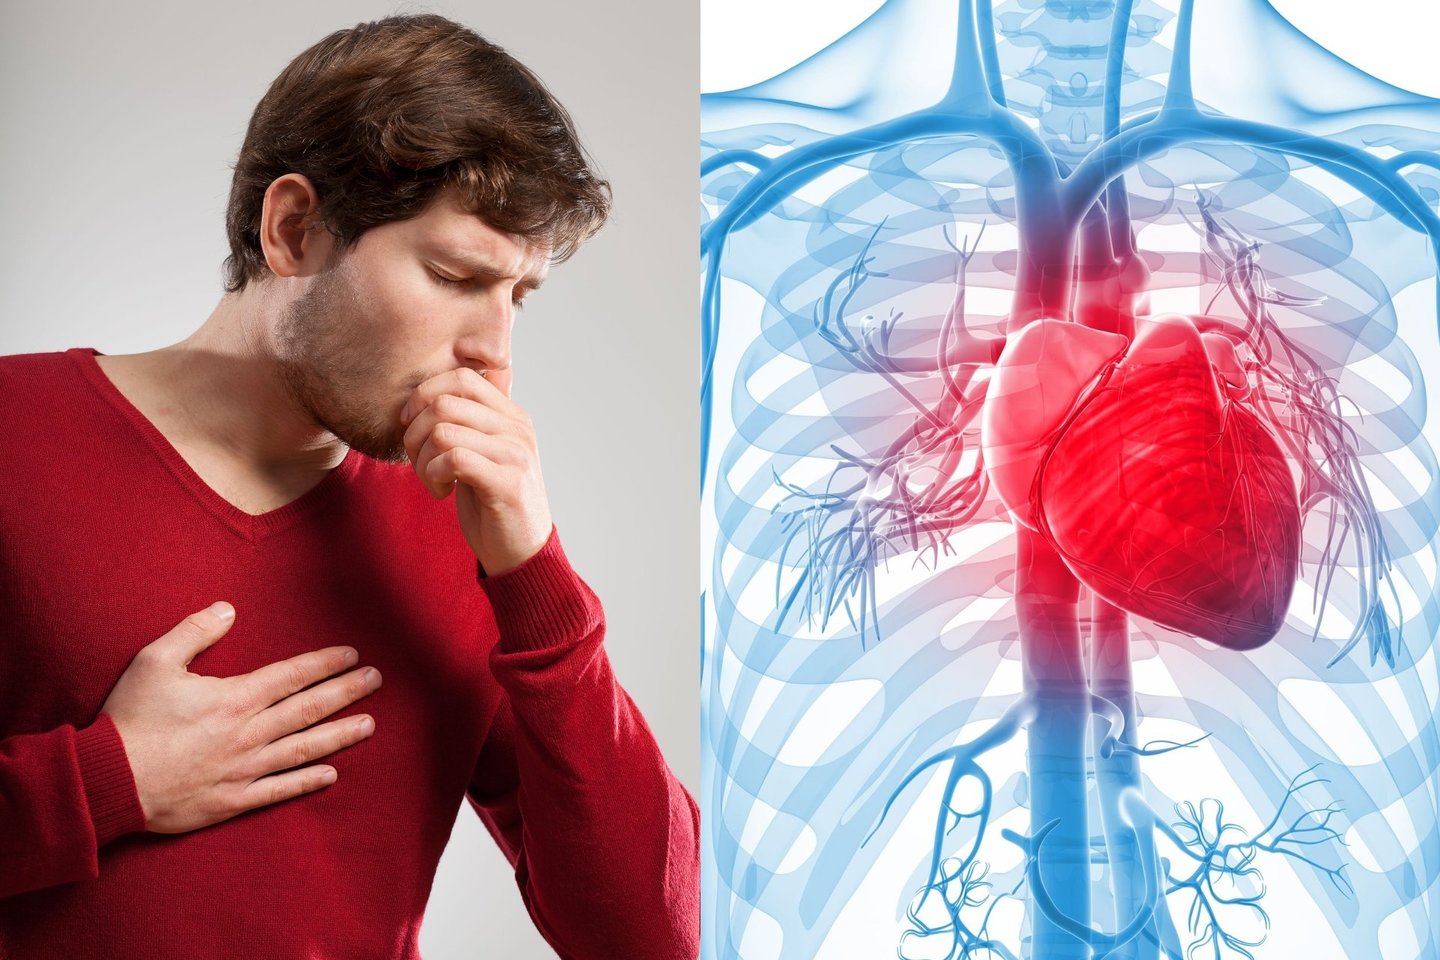 Širdies priepuolio simptomai gali būti galvos svaigimas, dusulys, šaltas prakaitas, spaudimo jausmas ir skausmas krūtinėje.<br>123rf nuotr.